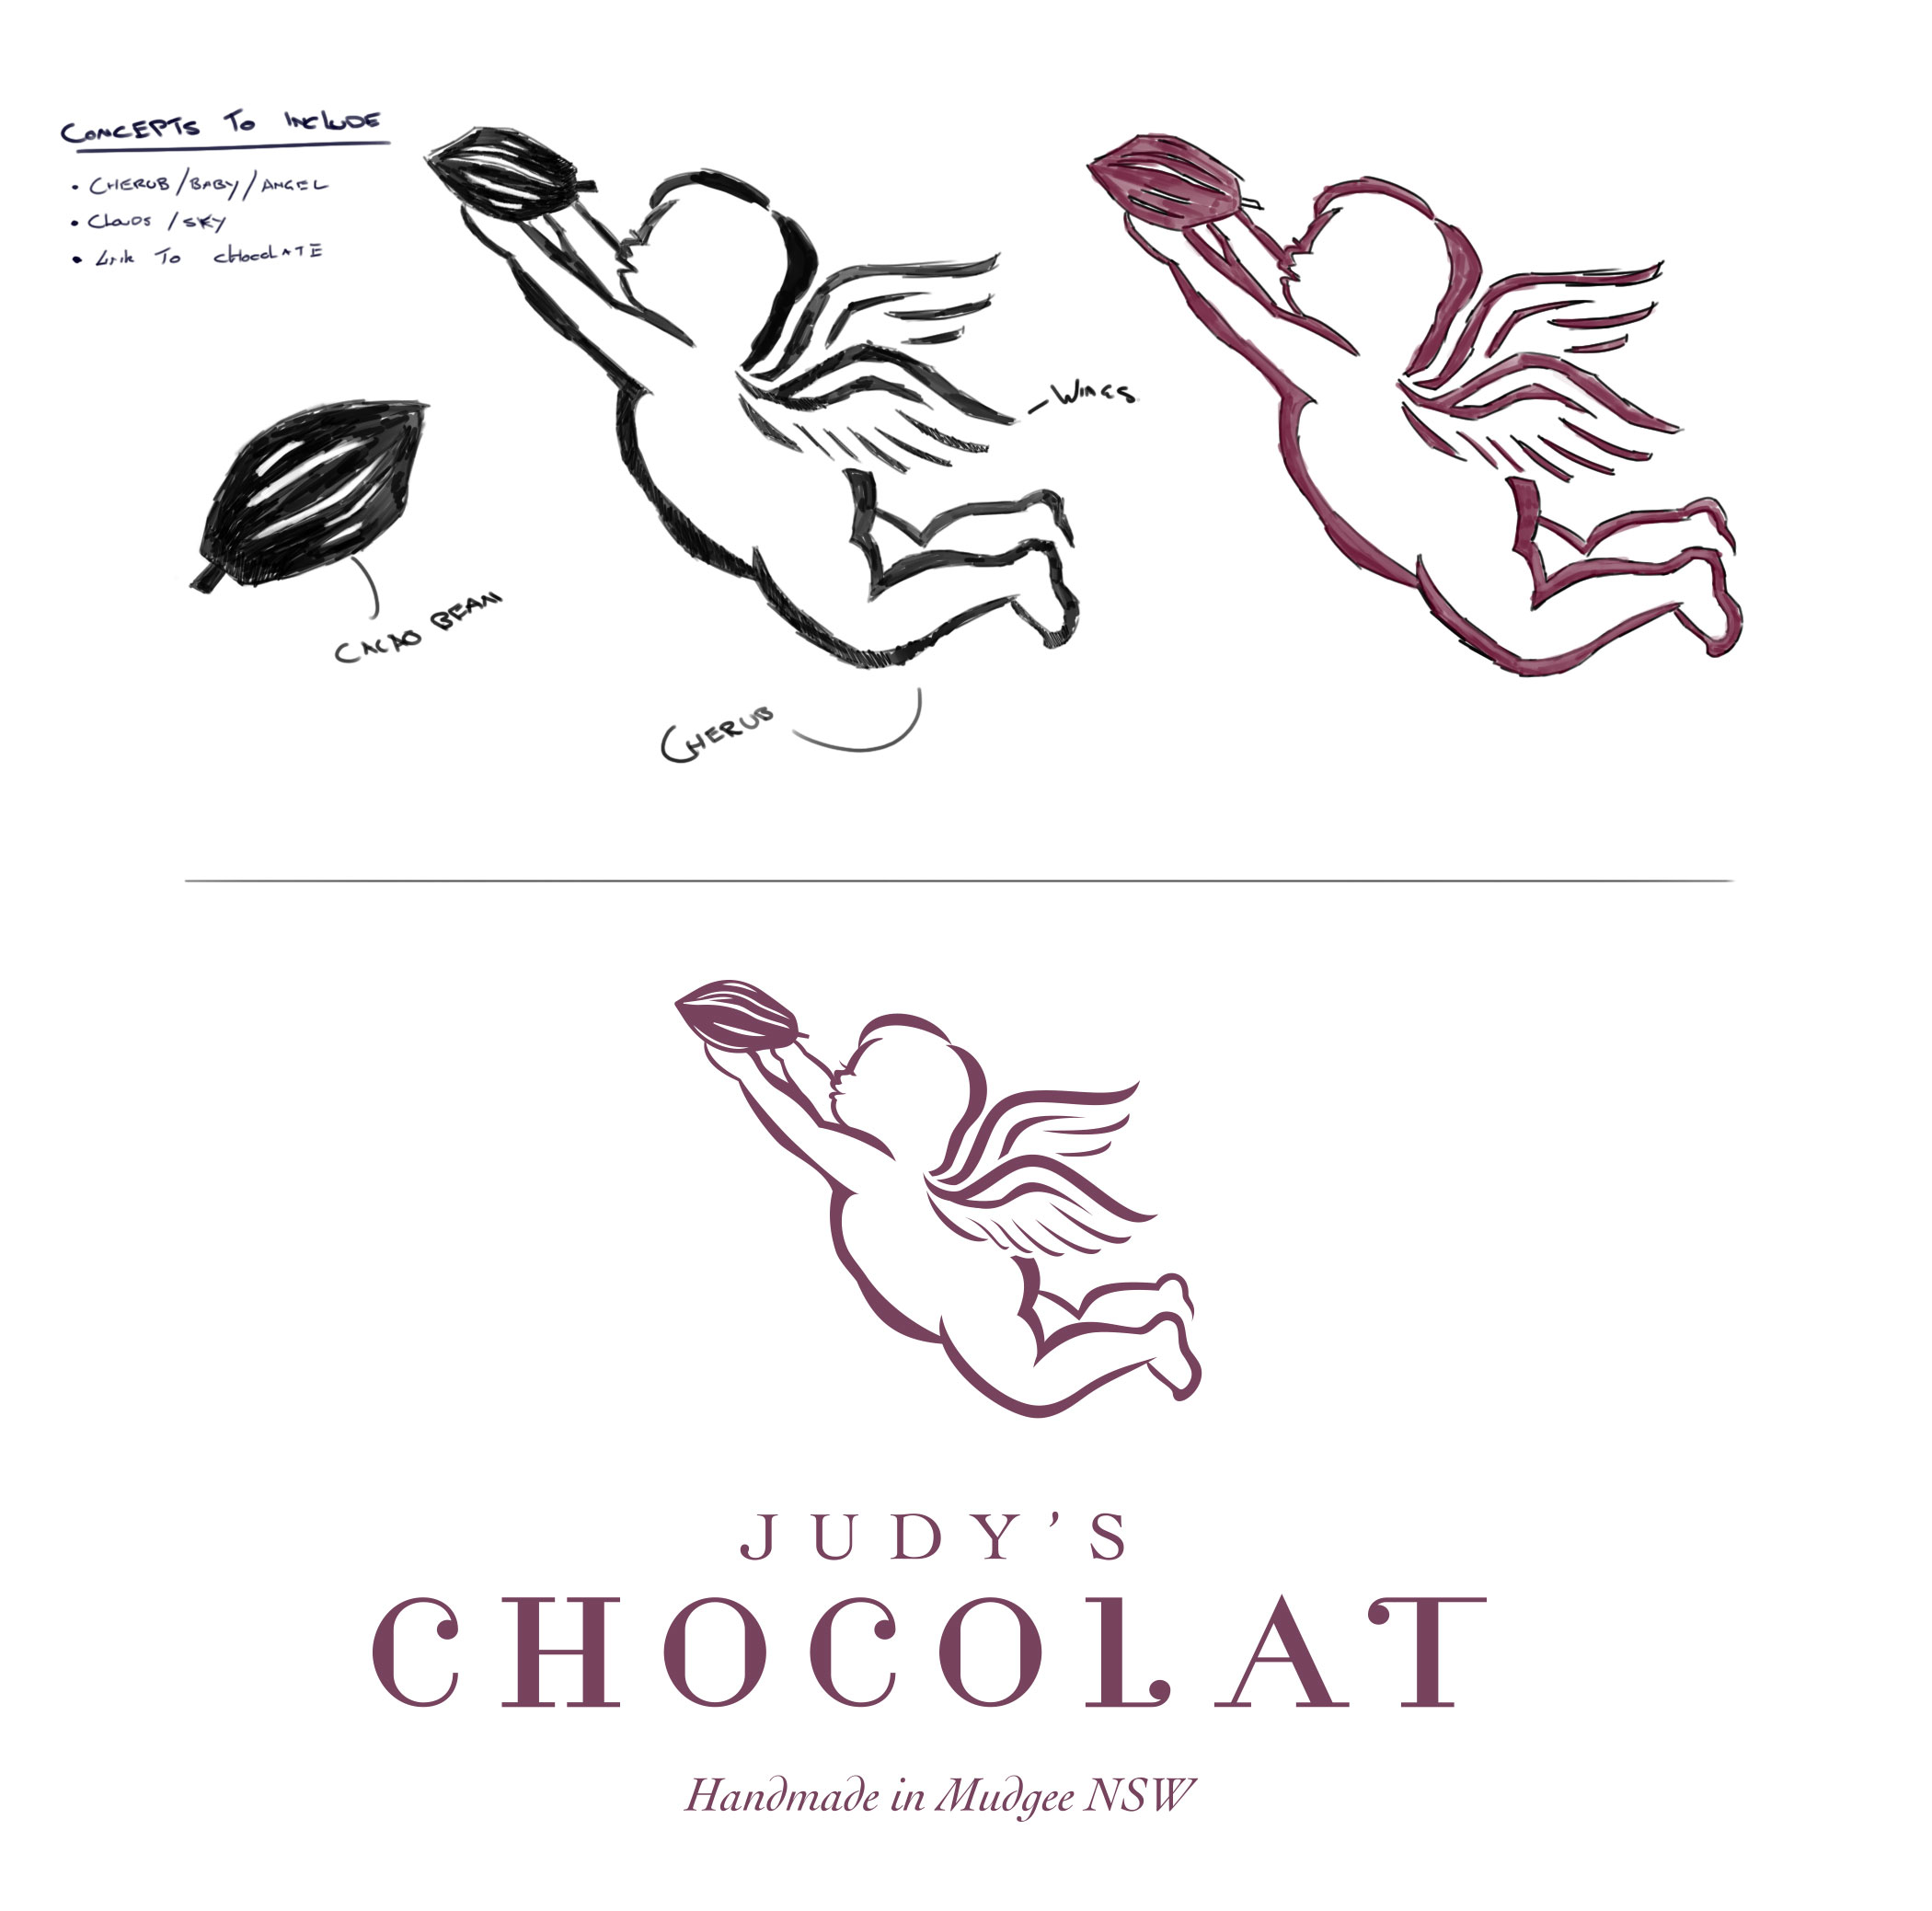 Design process of the Judy Chocolat logo